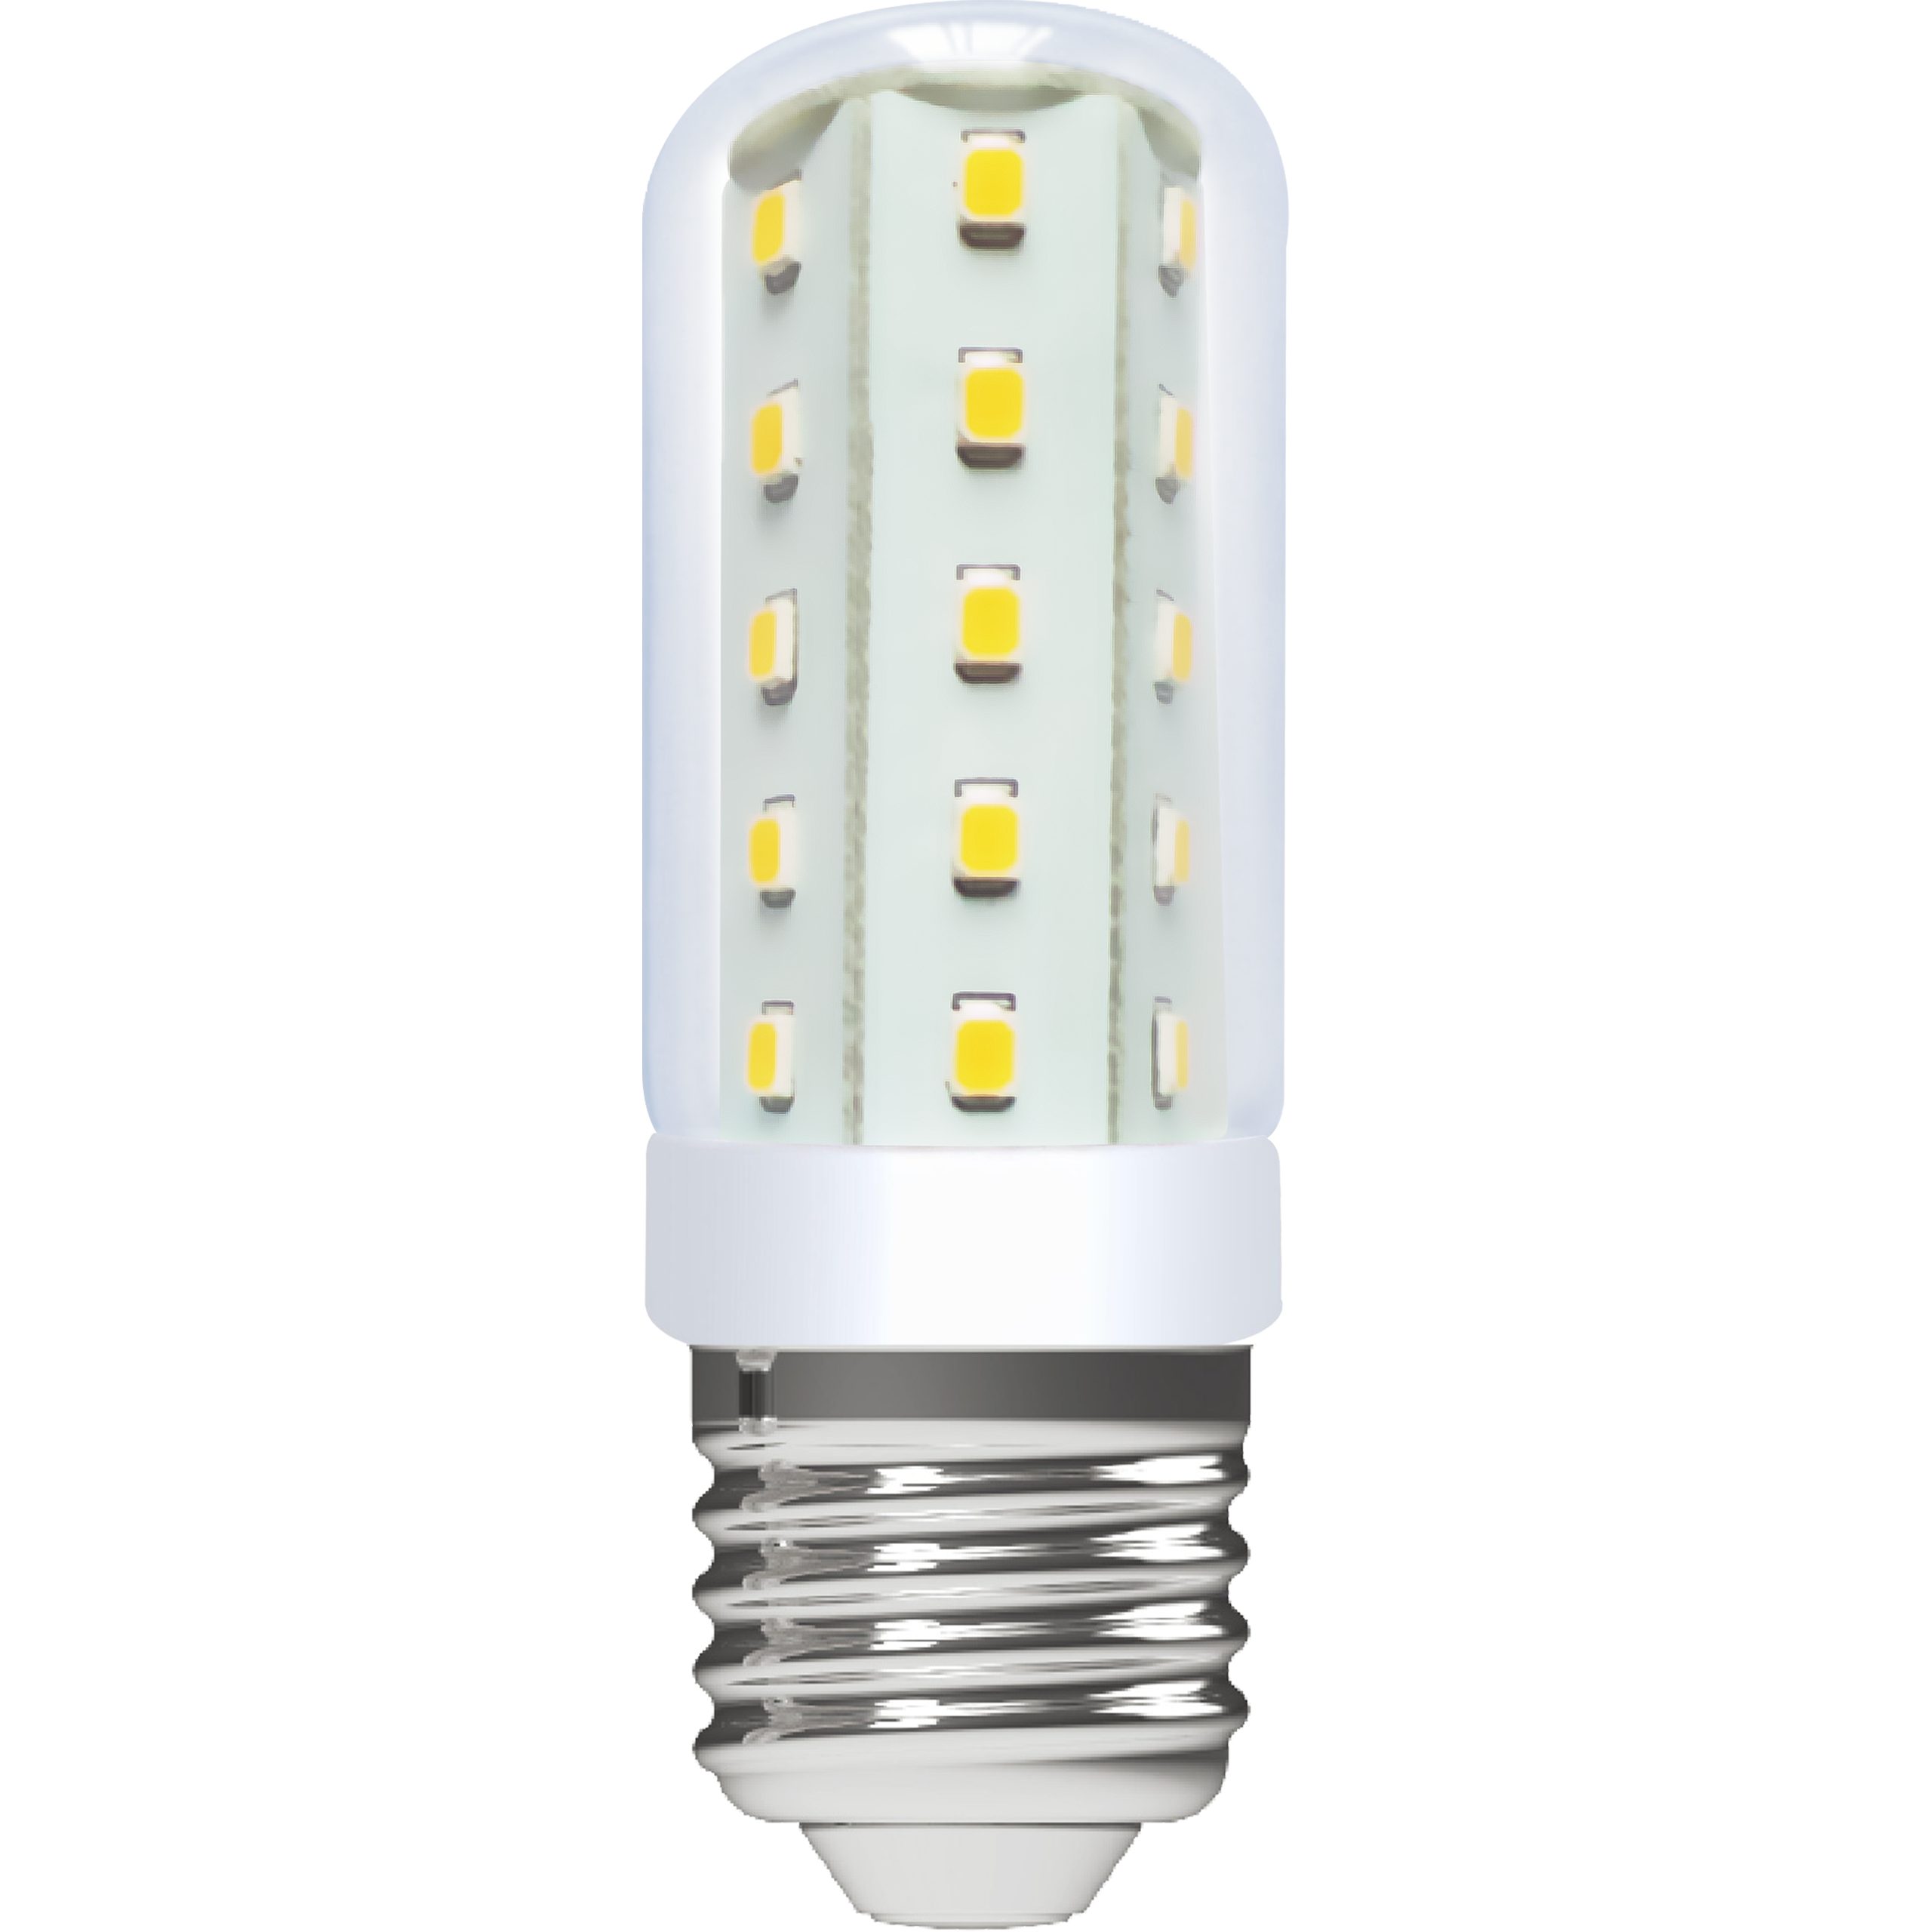 LED's light LED-Leuchtmittel 0620201 LED Kapsel, E27, E27 4W warmweiß Klar CRI97 für beste Farbwiedergabe T30 | Leuchtmittel